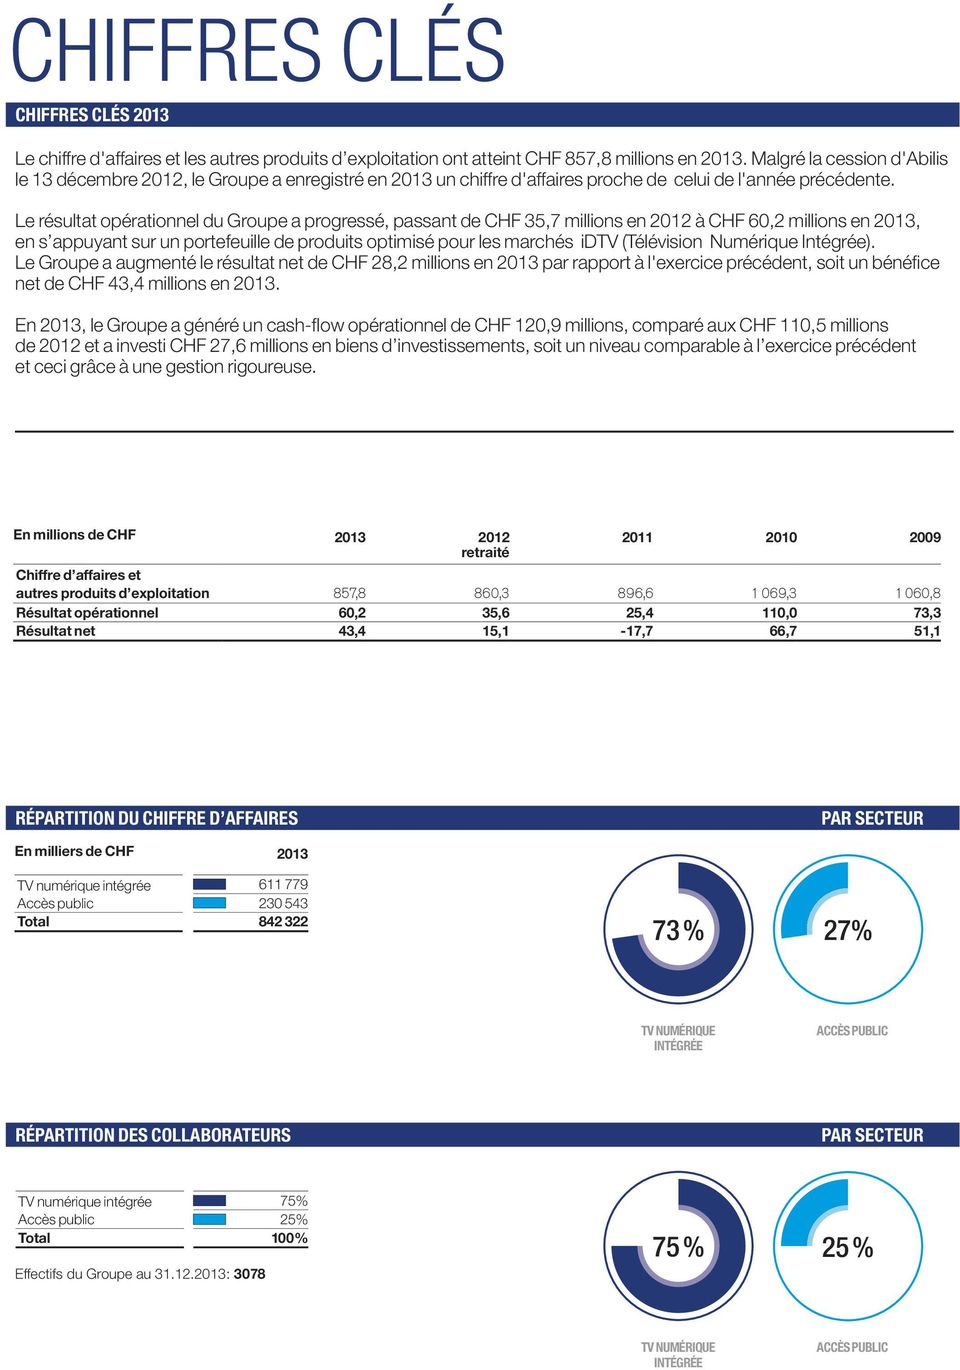 Le résultat opérationnel du Groupe a progressé, passant de CHF 35,7 millions en 2012 à CHF 60,2 millions en 2013, en s appuyant sur un portefeuille de produits optimisé pour les marchés idtv